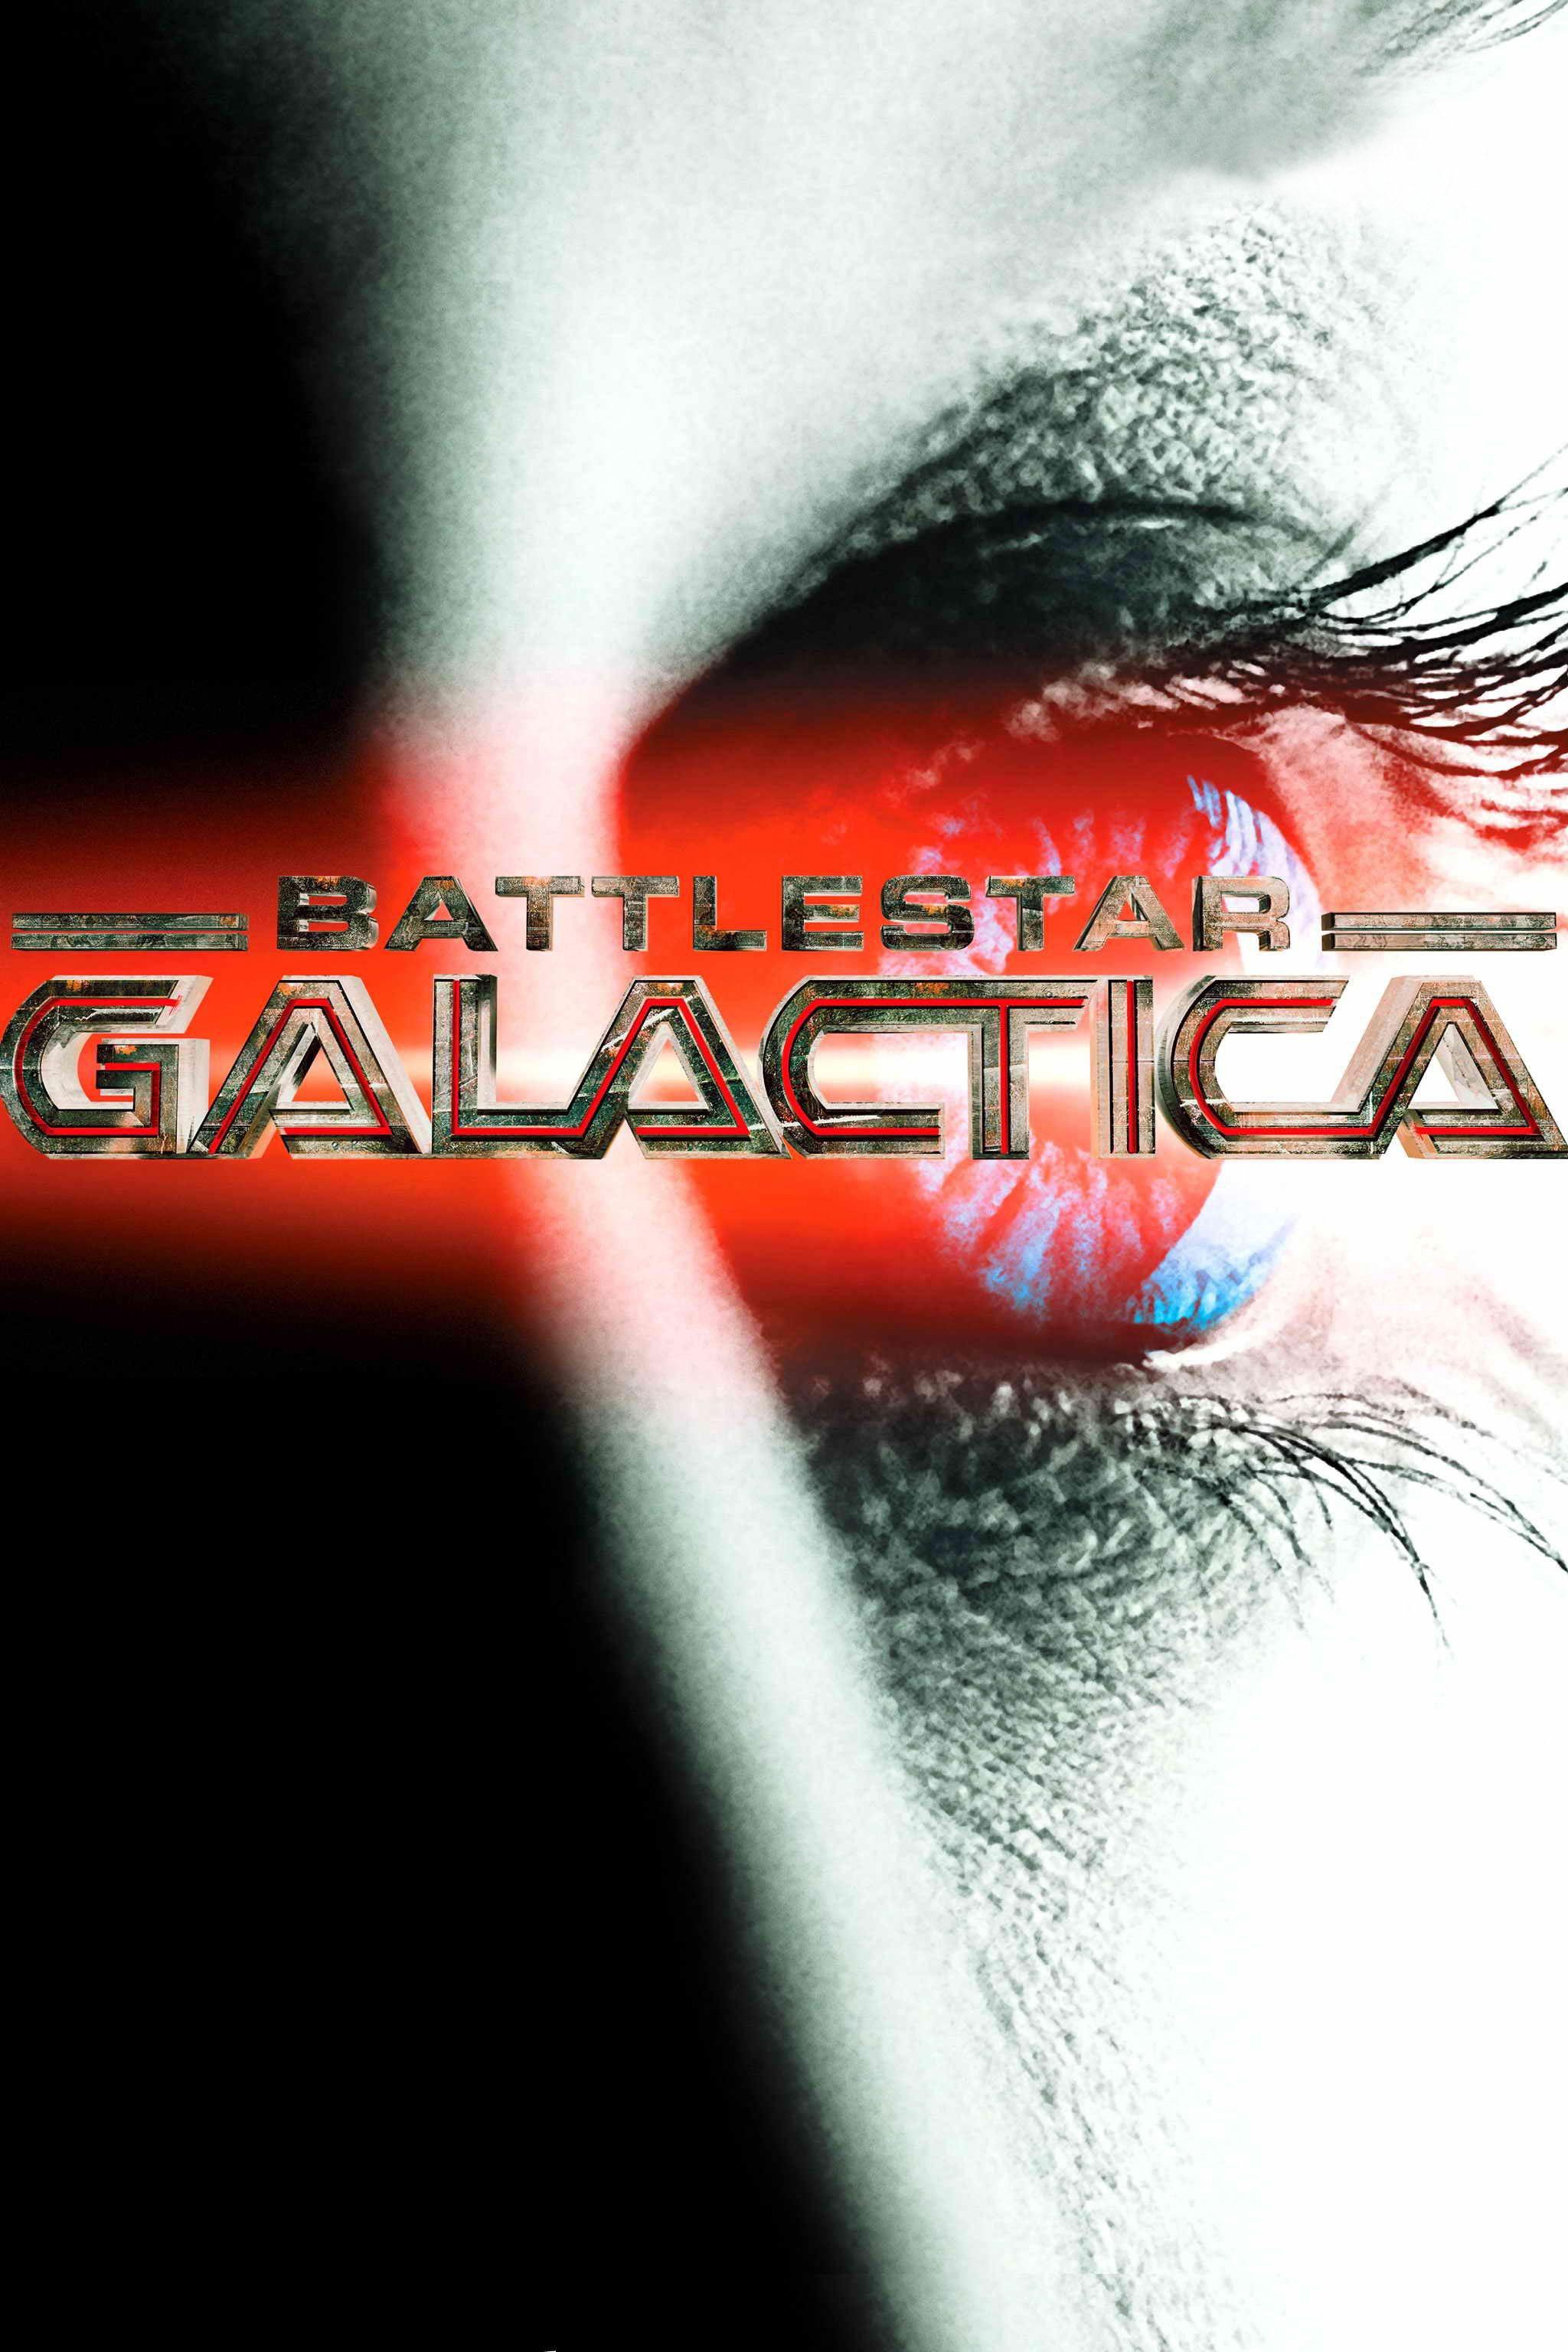 Постер фильма Звездный крейсер Галактика | Battlestar Galactica